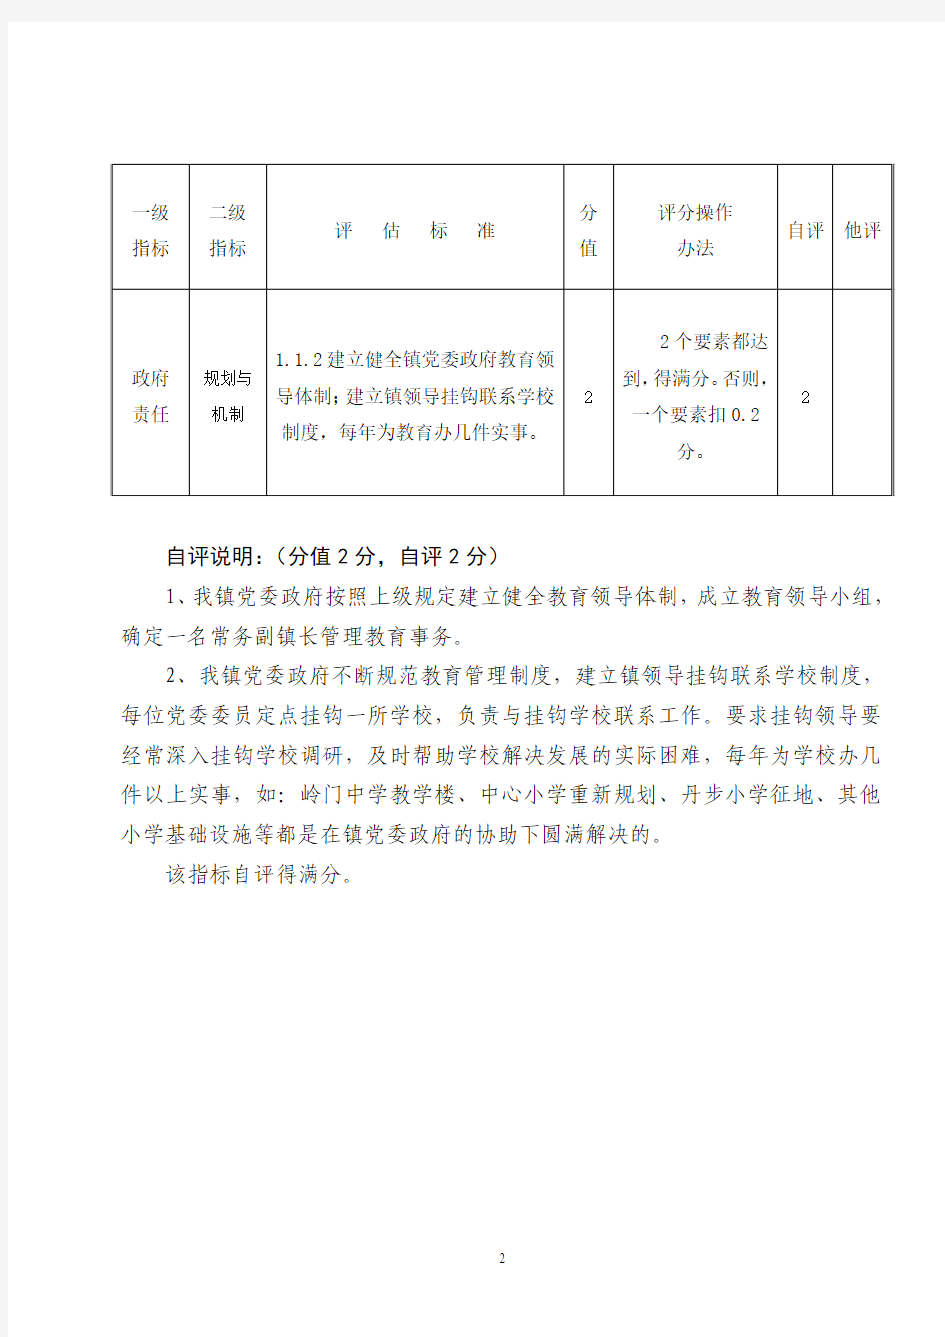 那霍自评分一览表 - 广东省教育厅